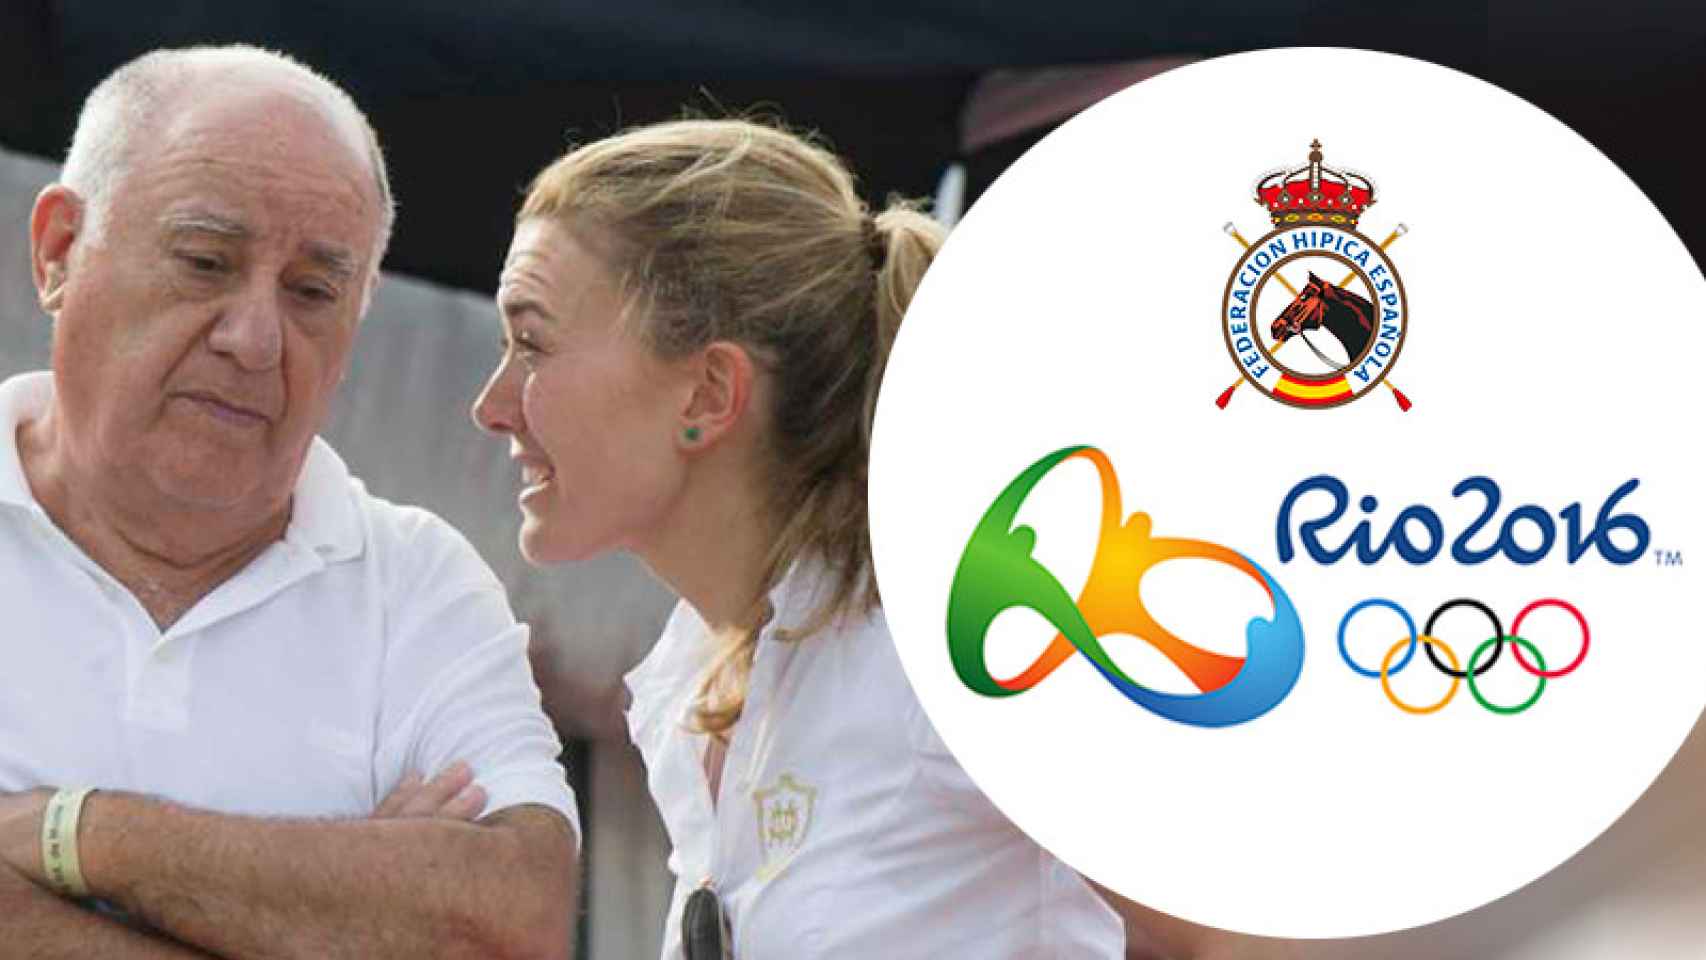 El multimillonario Amancio Ortega y su hija Marta, con las insignias de Río 2016 y la Federación Española de Hípica